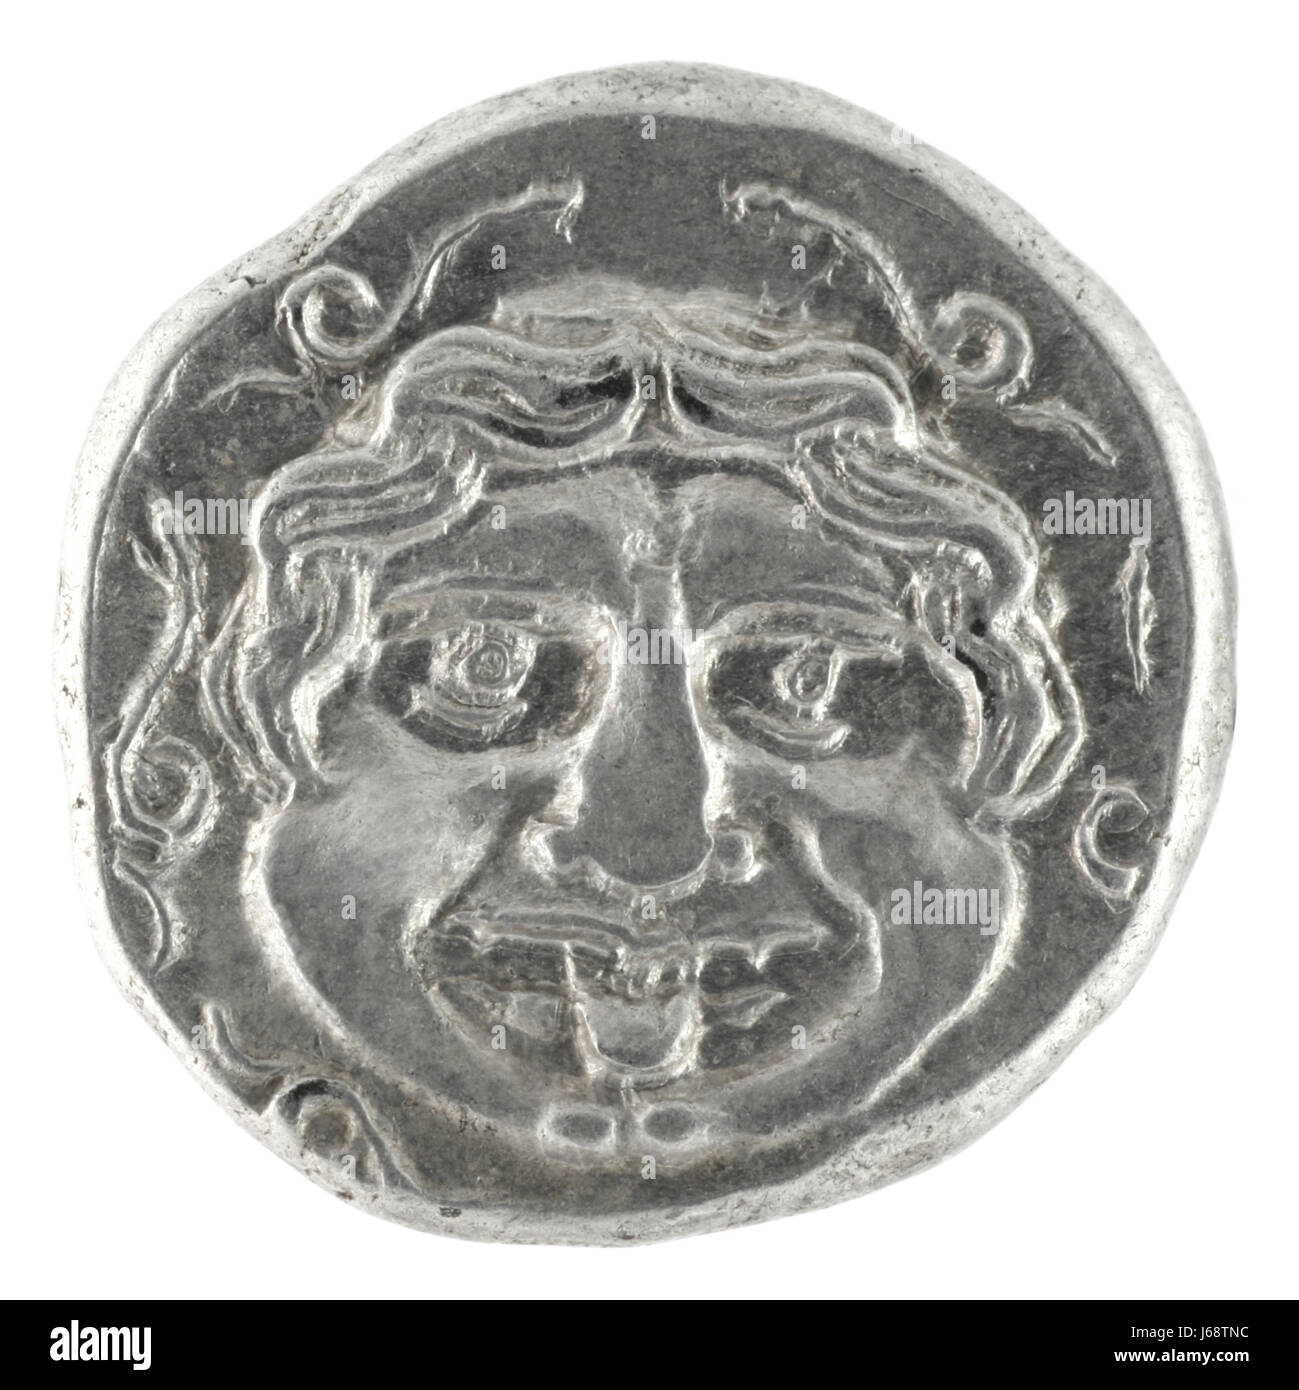 Pièce de monnaie de la Grèce antique grecque vintage monster objet mythique de l'art historique Banque D'Images